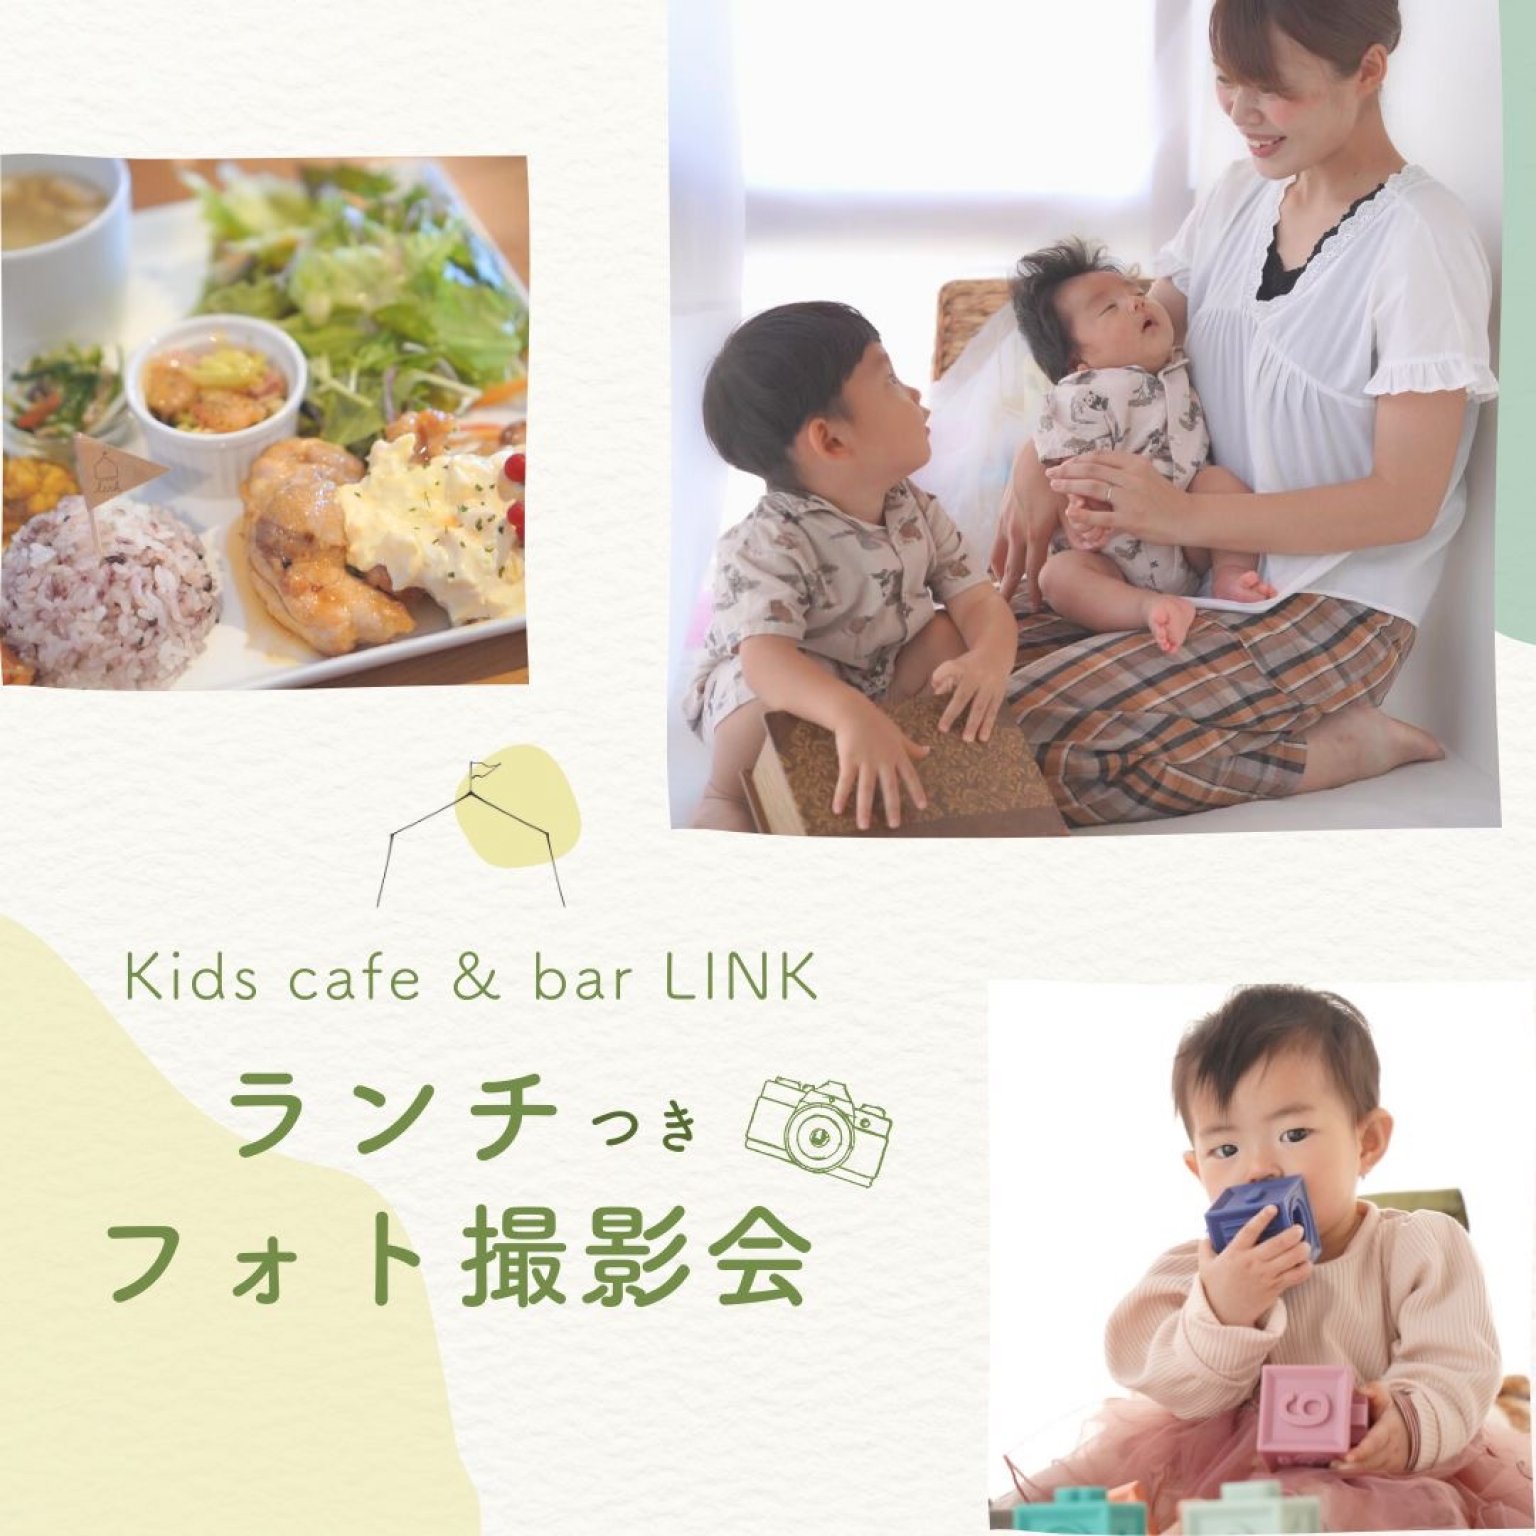 kidscafeLINK撮影会〜一般用〜